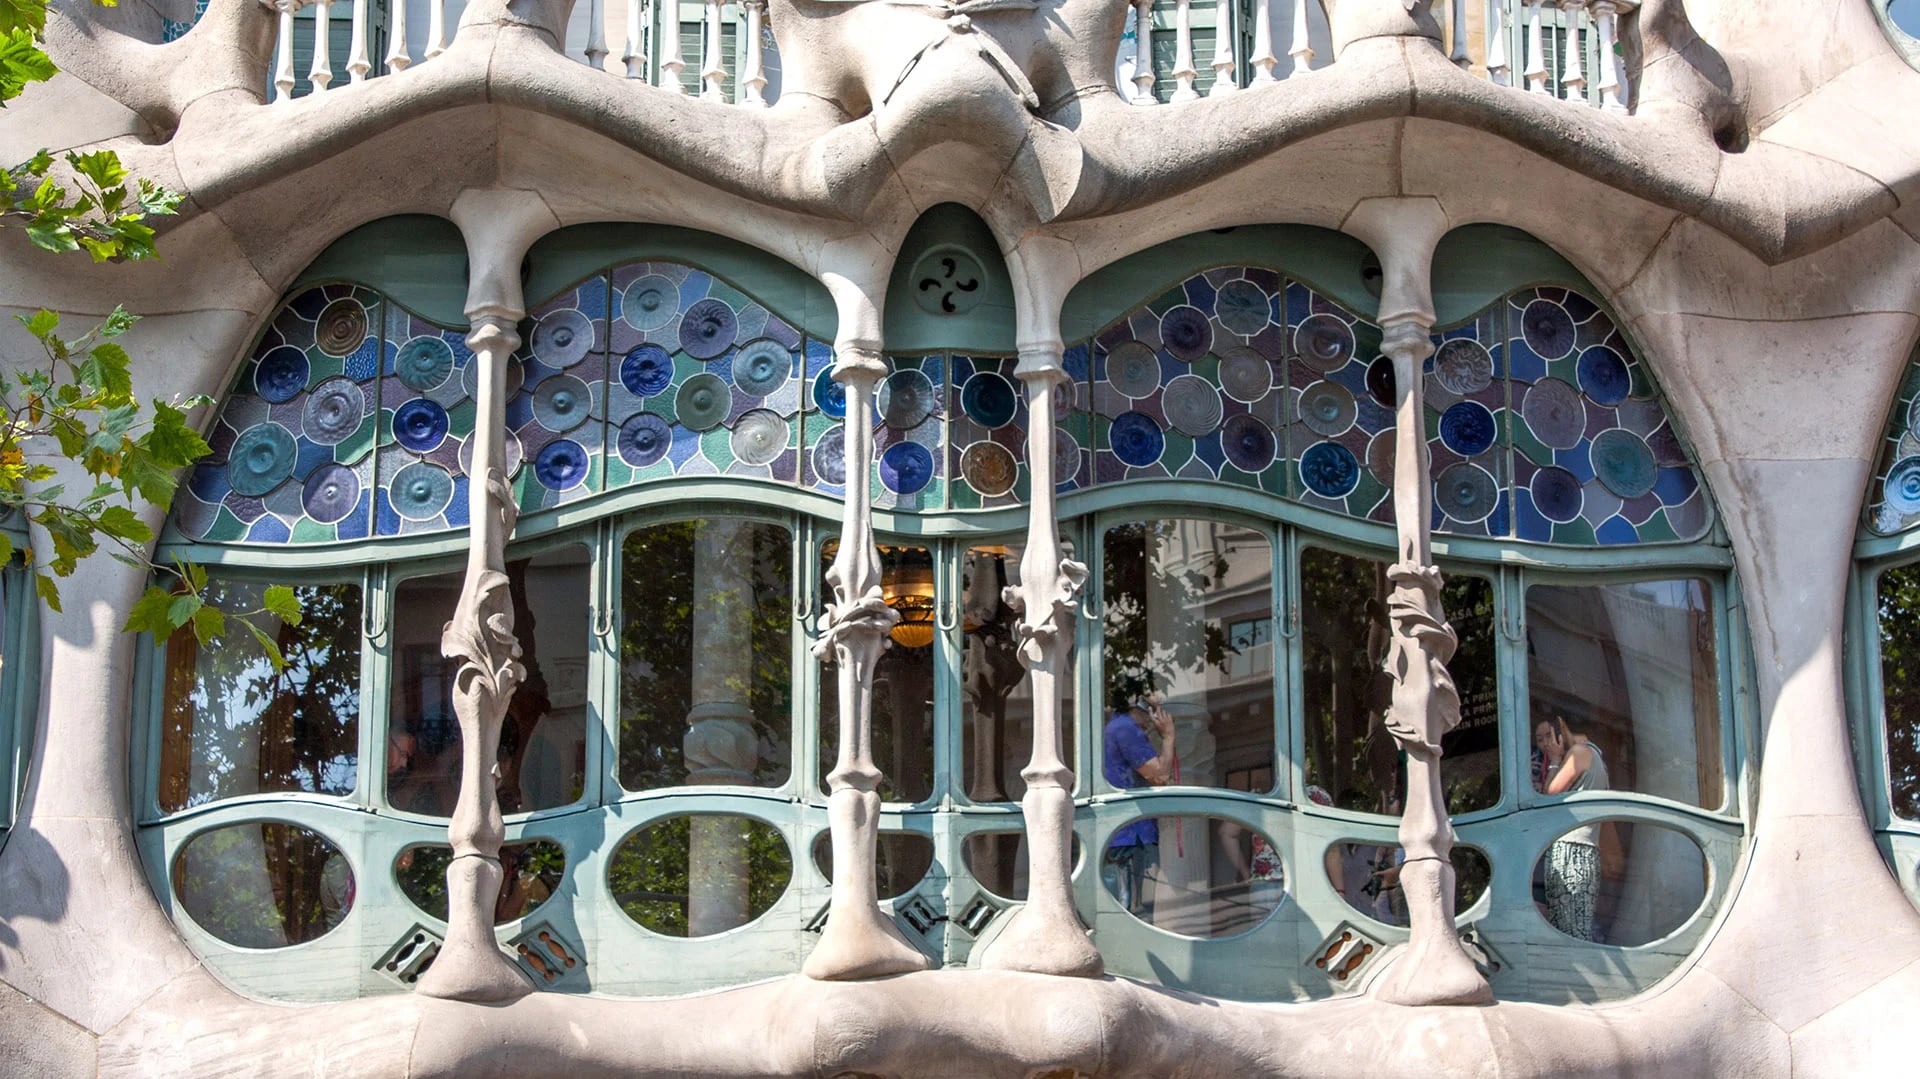 Casa Batlló fue diseñada por Gaudí para un adinerado aristócrata de Barcelona. Los primeros pisos eran para el propietario y los pisos superiores estaban destinados al alquiler. Ahora funciona como museo.